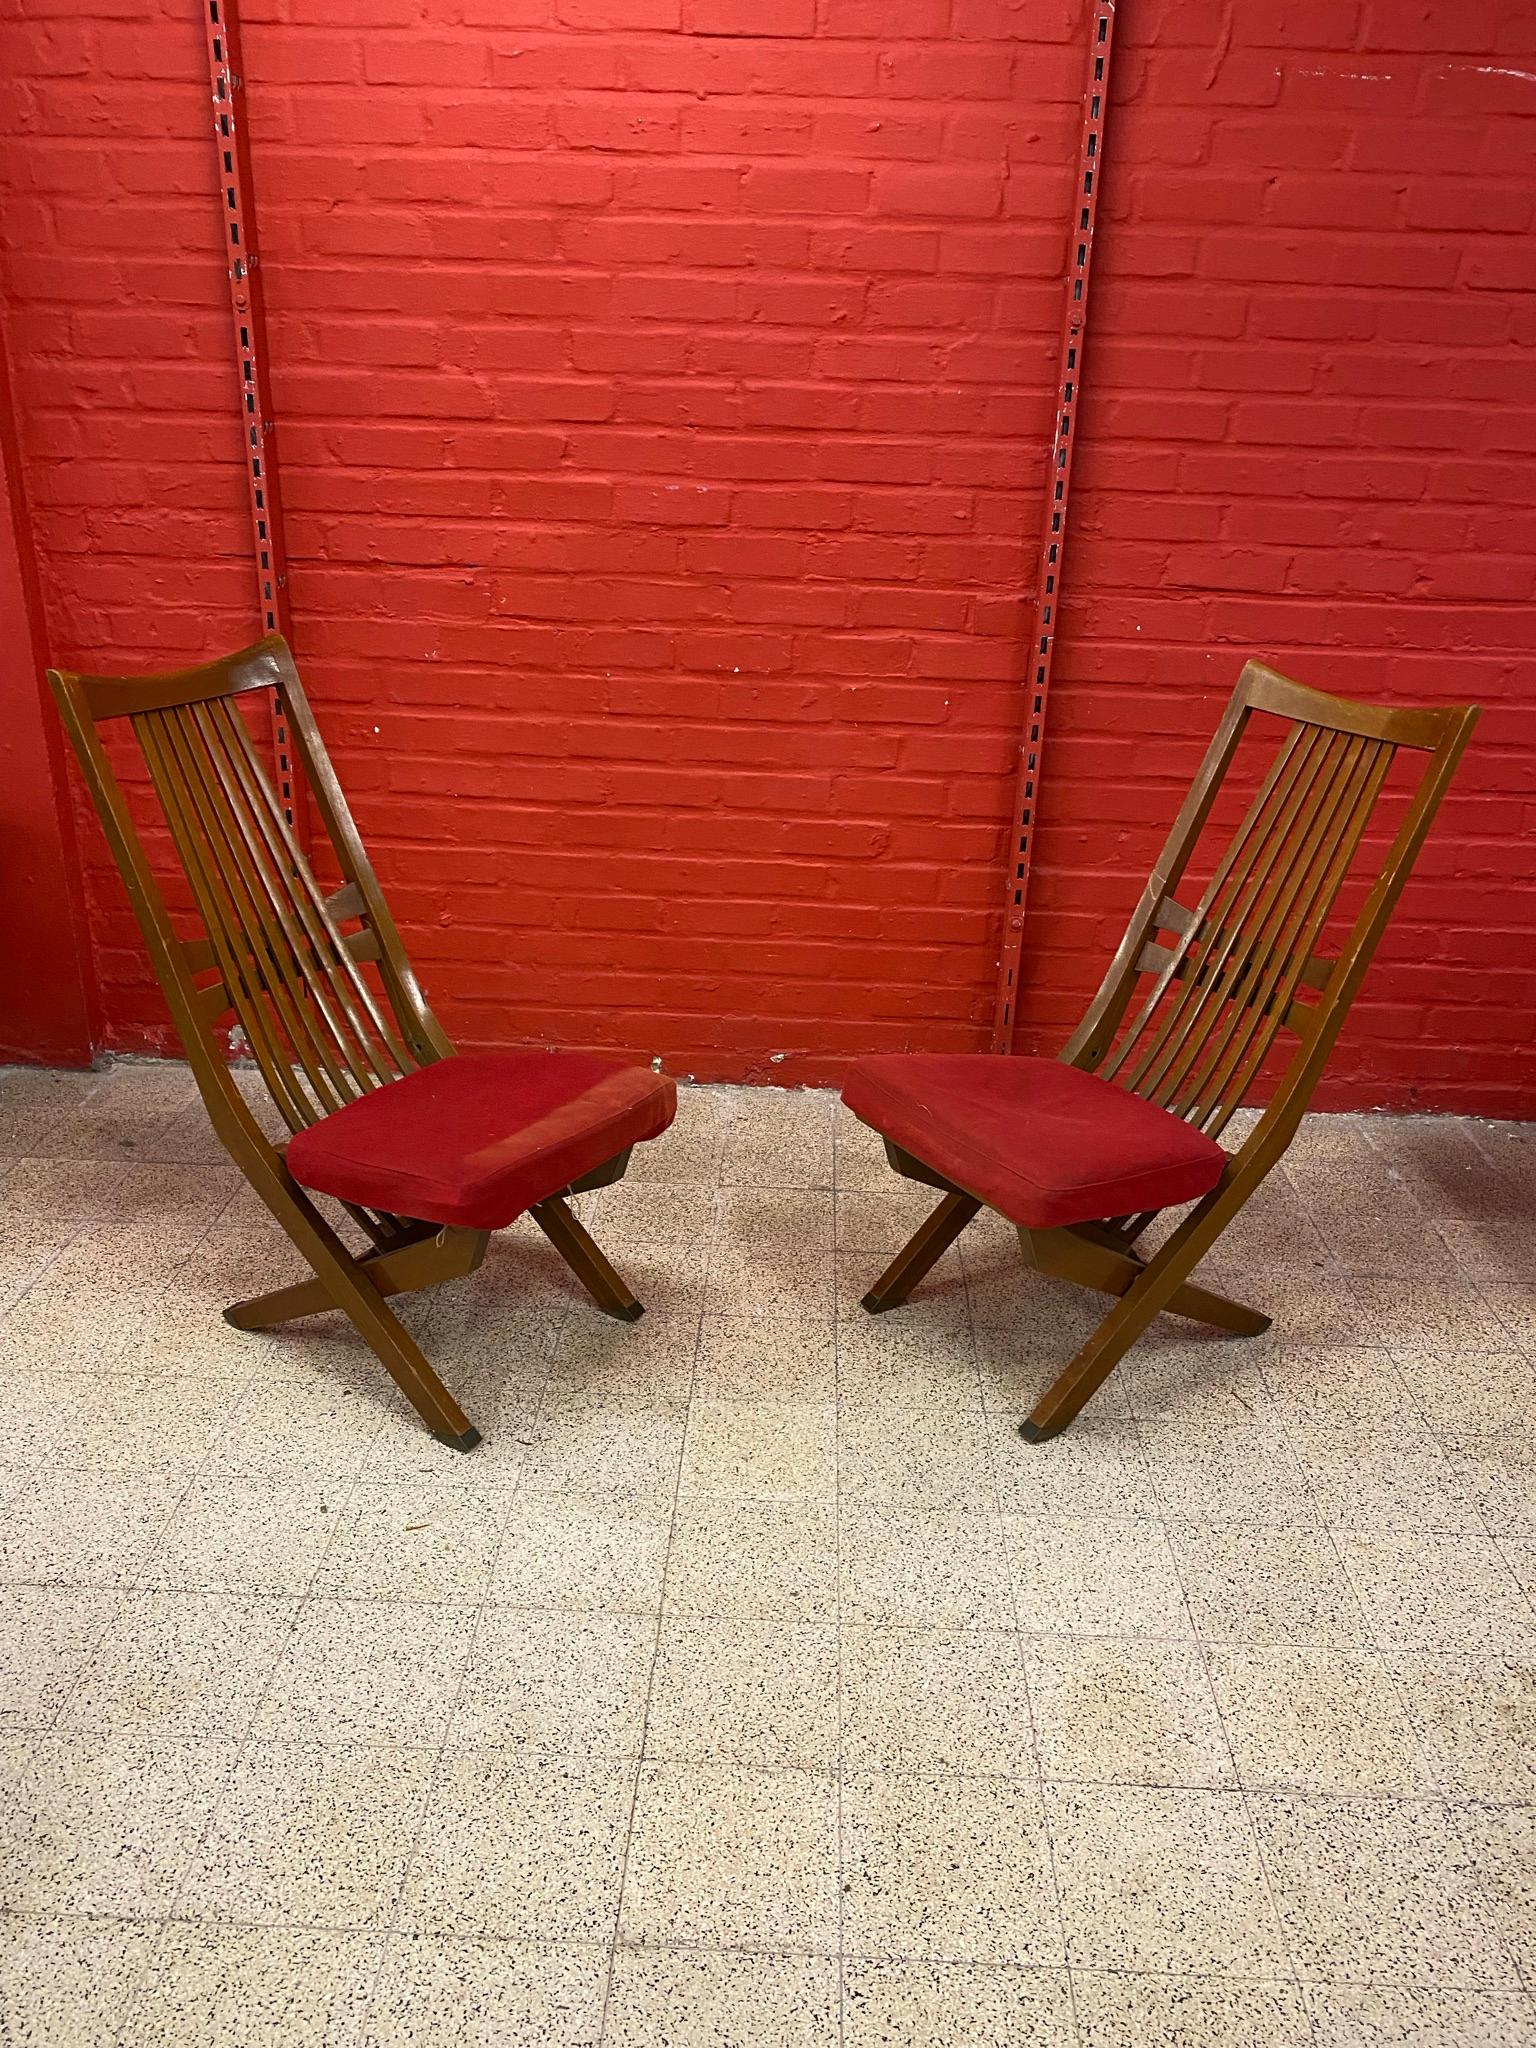 4 chaises vintage à 3 positions chaise haute, chaise de cheminée, chaise longue 
tissu à refaire 
les dimensions sont données en position haute.